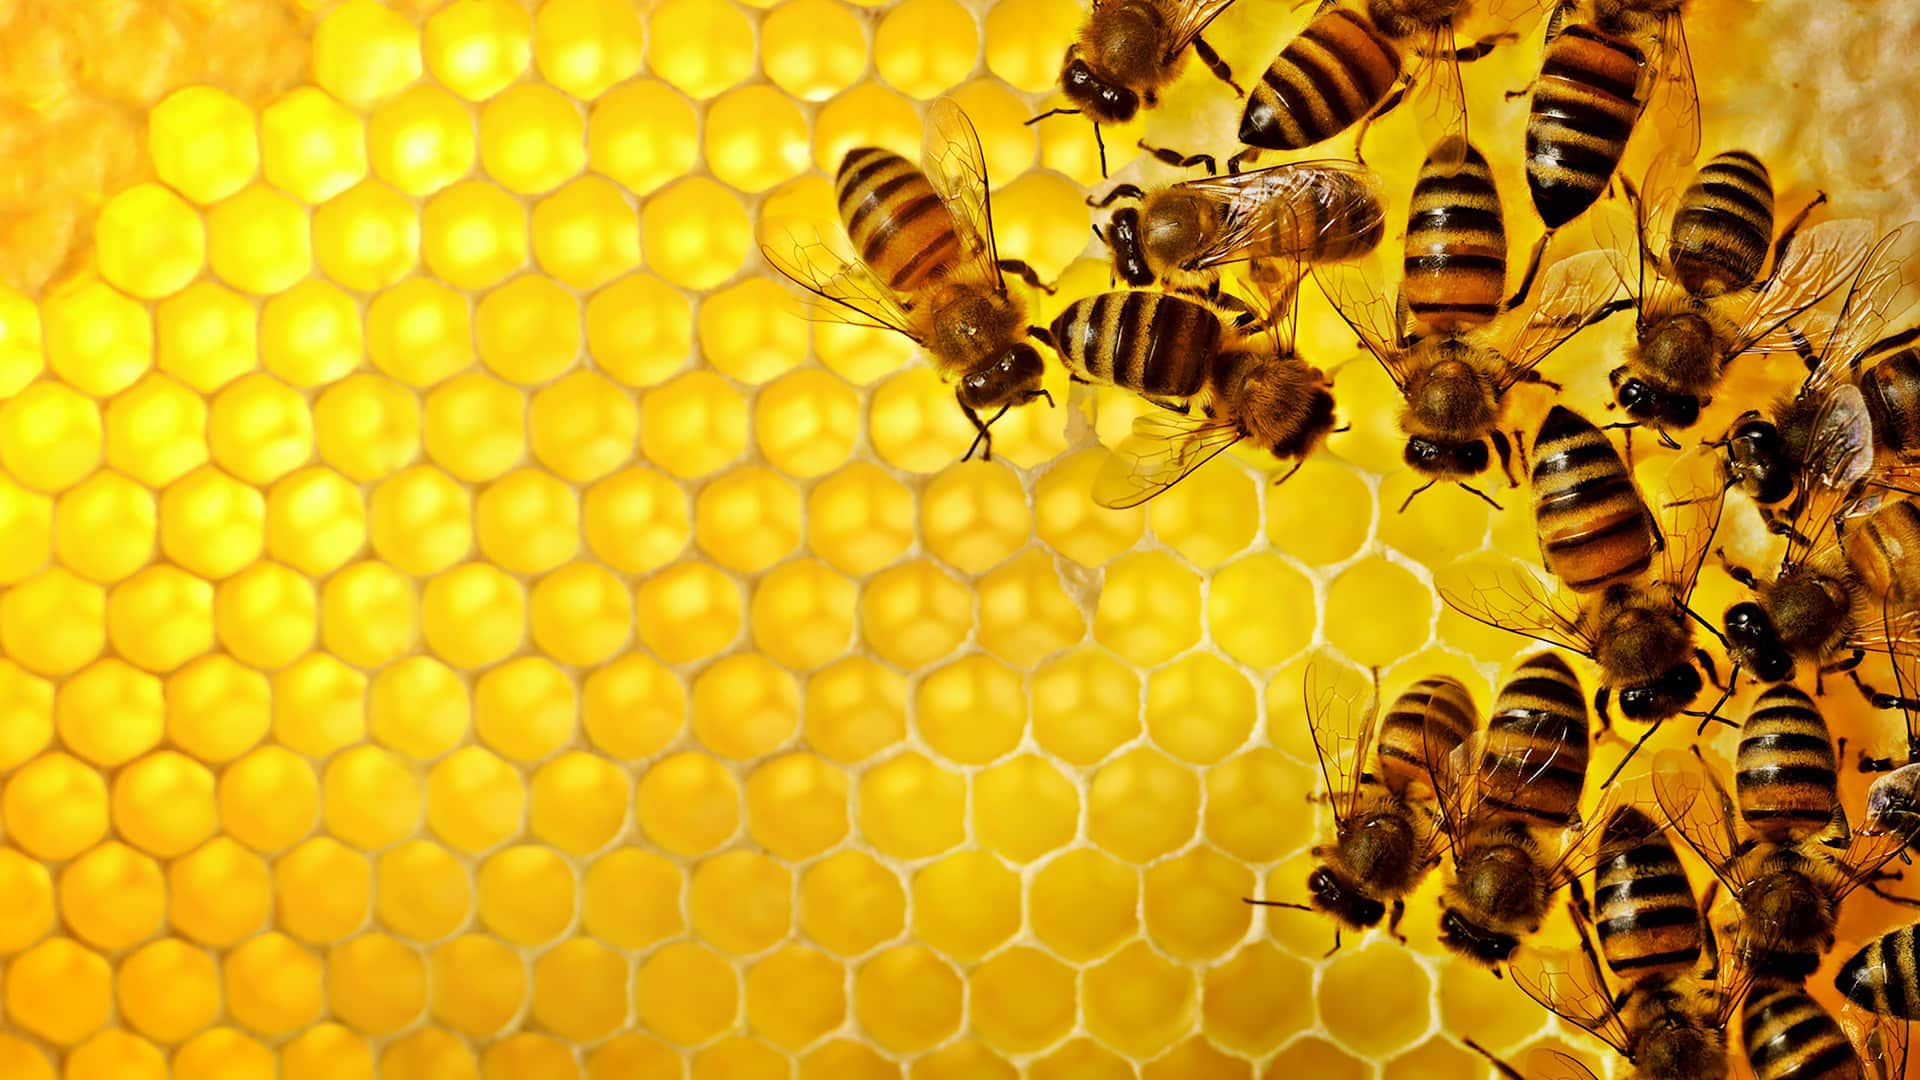 მსოფლიოს ფართობიდან გამომდინარე, ფუტკრების რაოდენობა 30-დან 90%-მდე შემცირდა: მათი მუშაობა გავლენას ახდენს პლანეტის საკვები კულტურების 75%-ზე მეტზე და მათმა გაქრობამ შეიძლება გამოიწვიოს უპრეცედენტო კრიზისი (ფოტო: Mike Black/iStock)